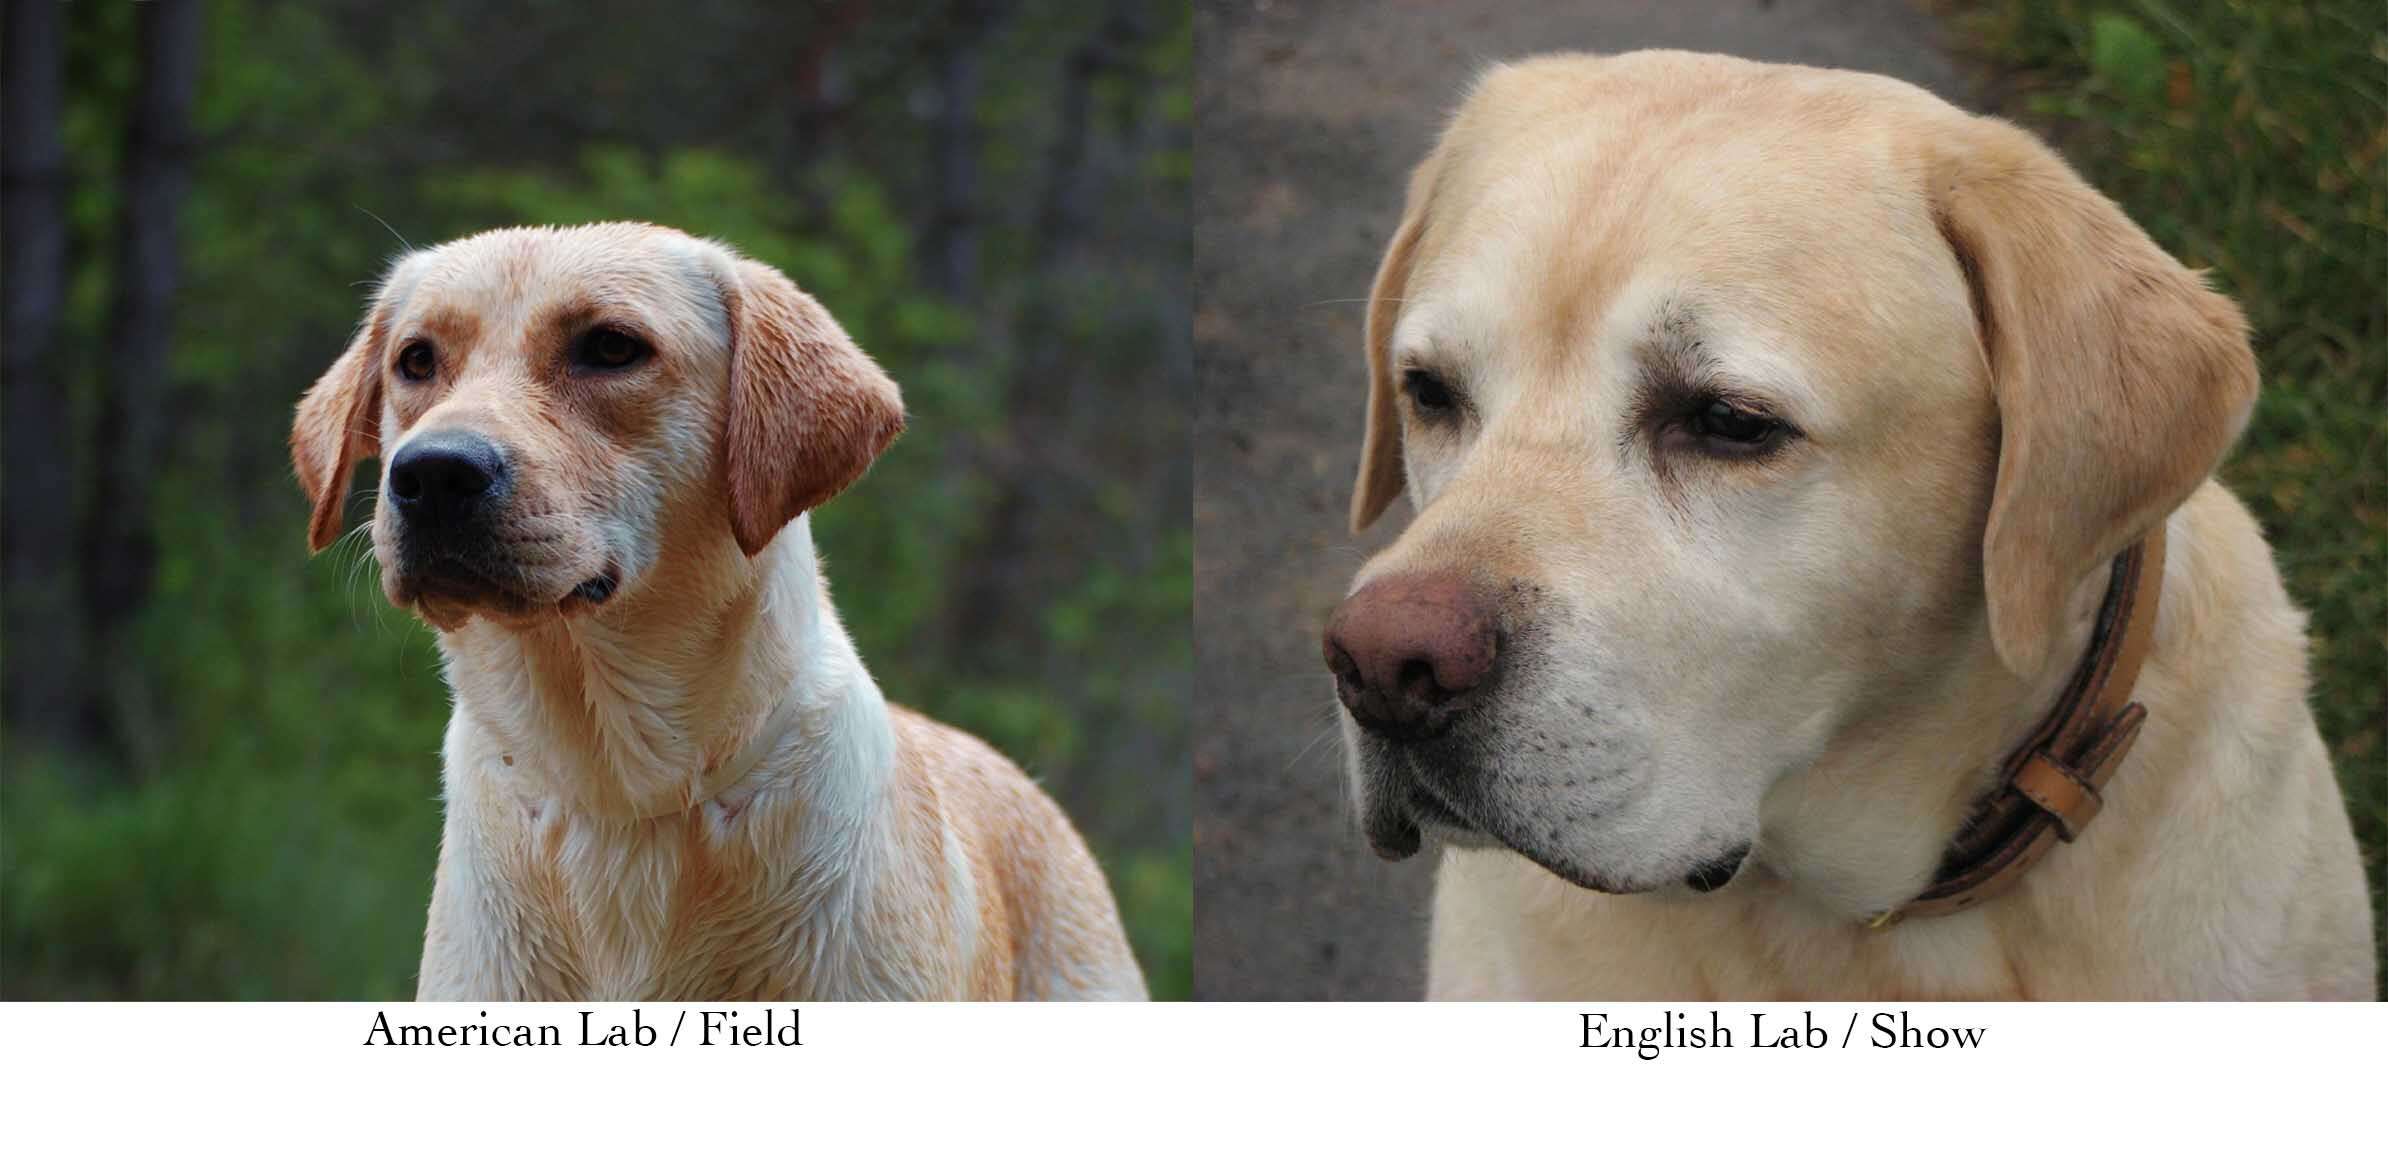 Labrador americano a la izquierda con cara más estrecha y cuerpo más delgado. Labrador inglés a la derecha con la cara y el hocico más anchos.